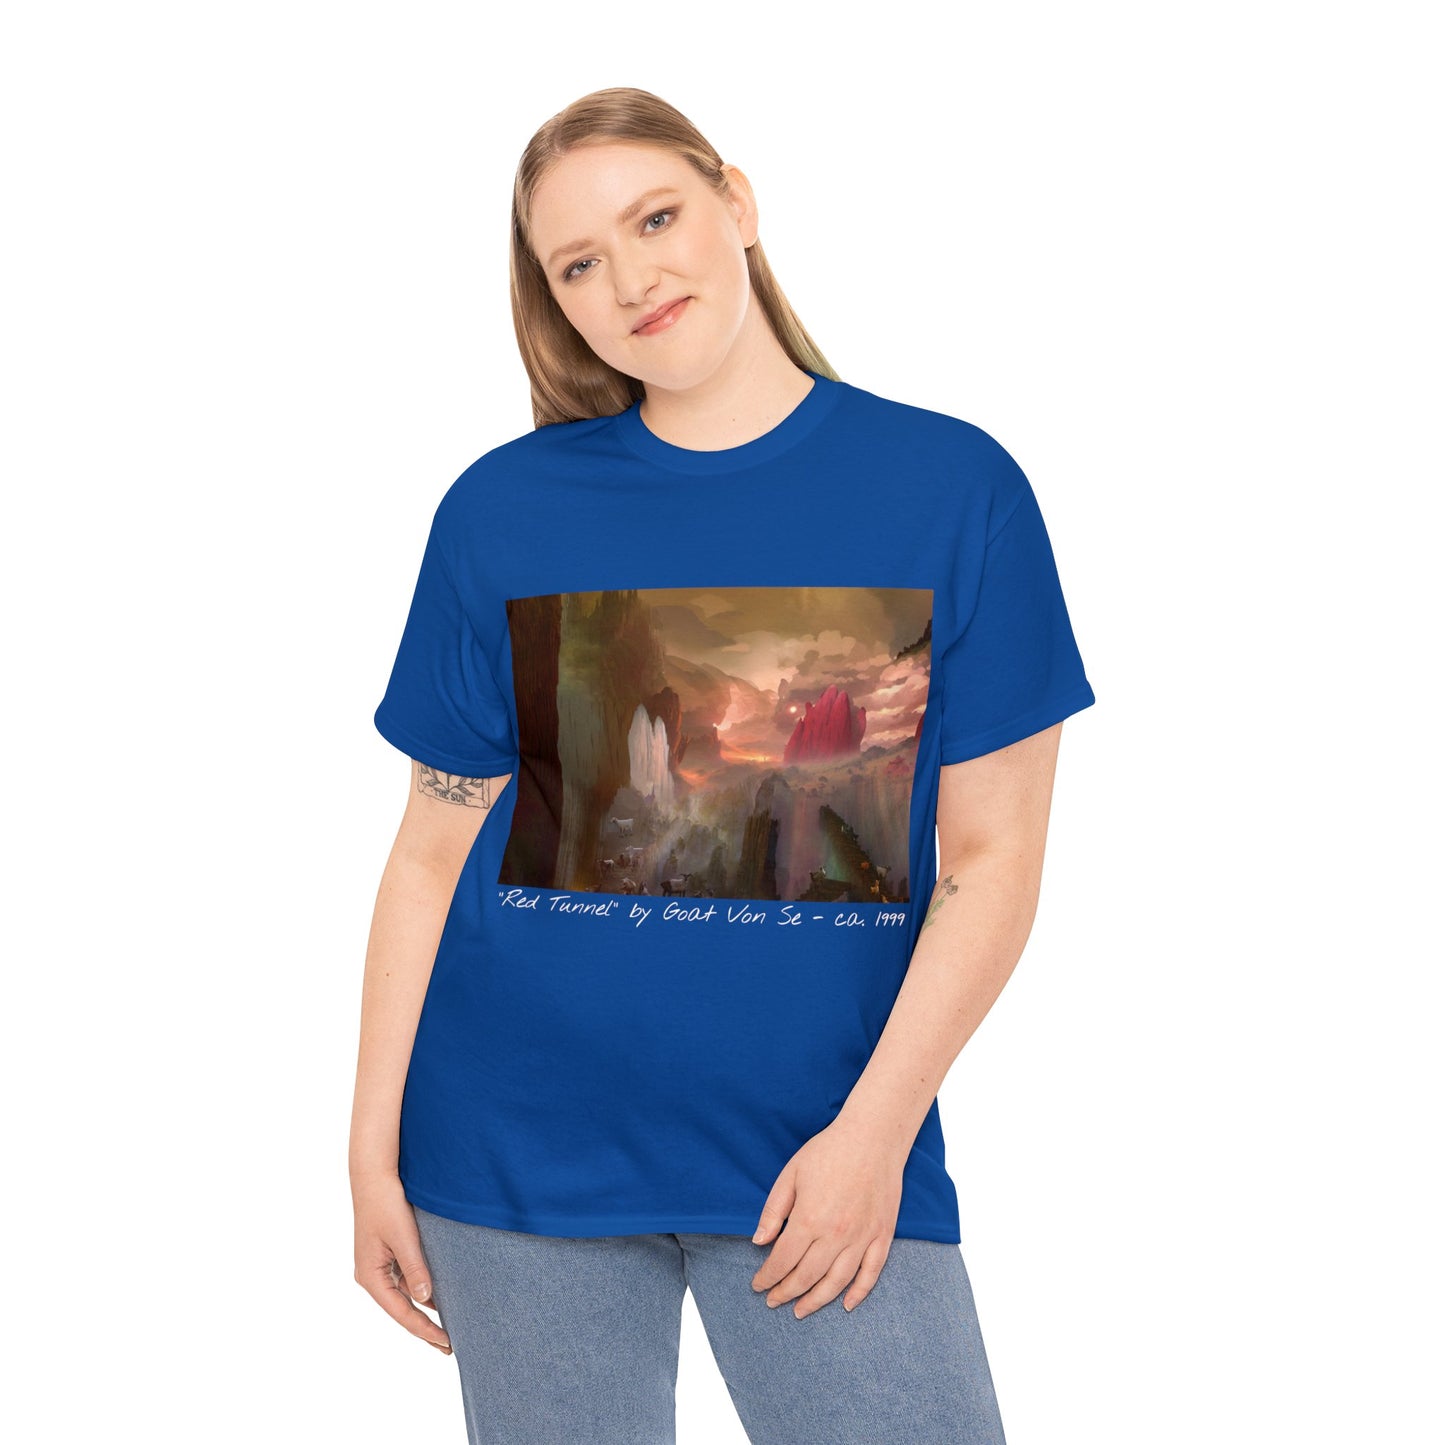 Goatse Art Shirt